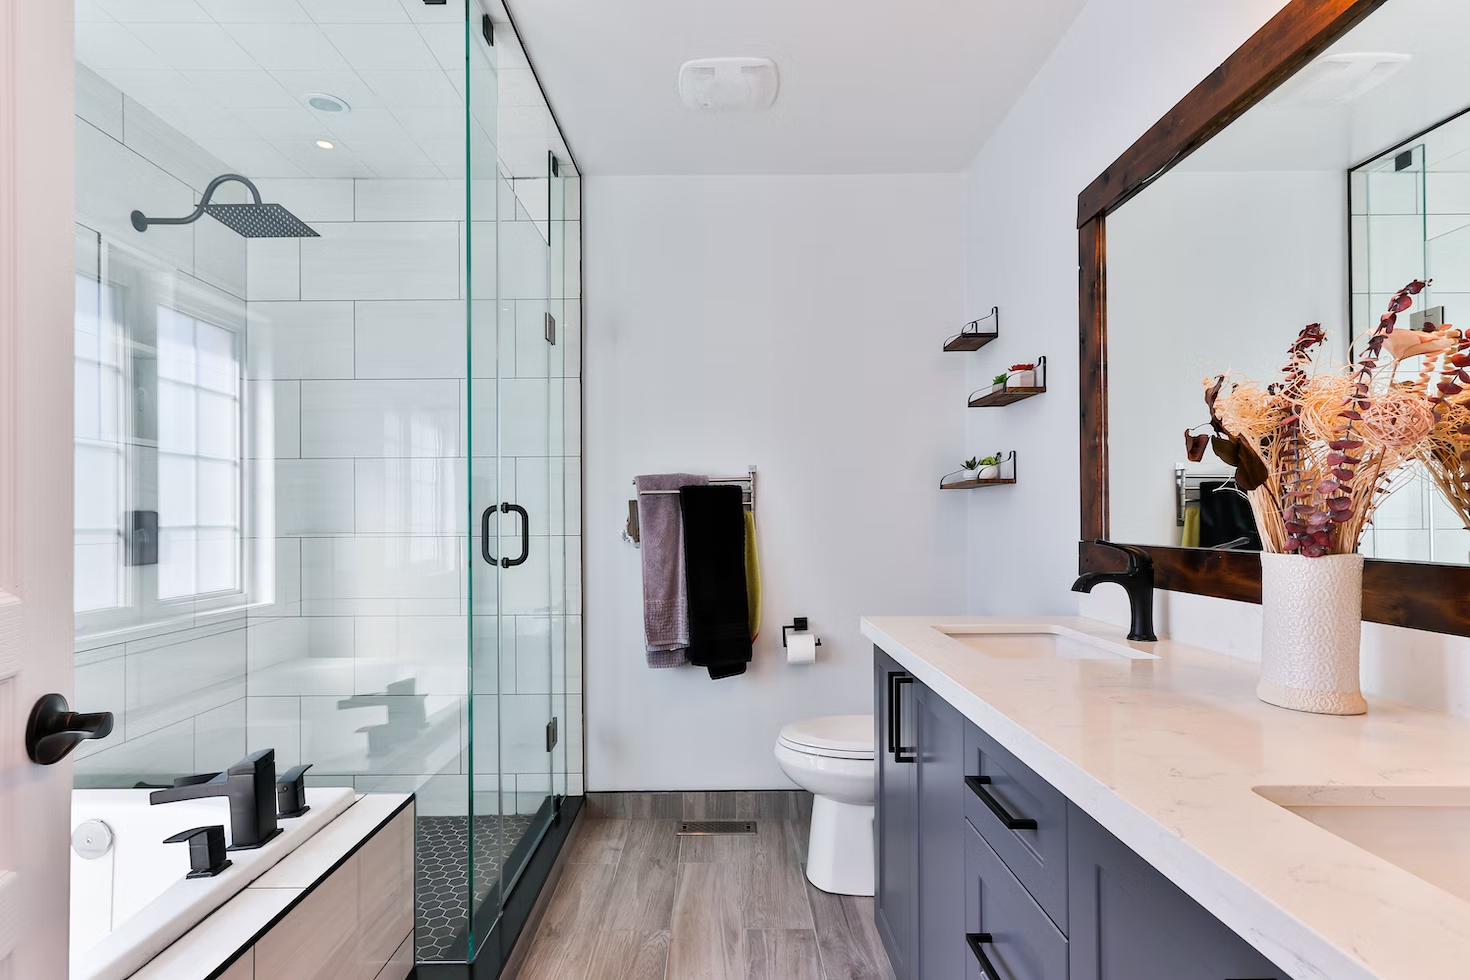 Aj dokonalú kúpeľňu môžu špatiť detaily – ktoré to najčastejšie sú?